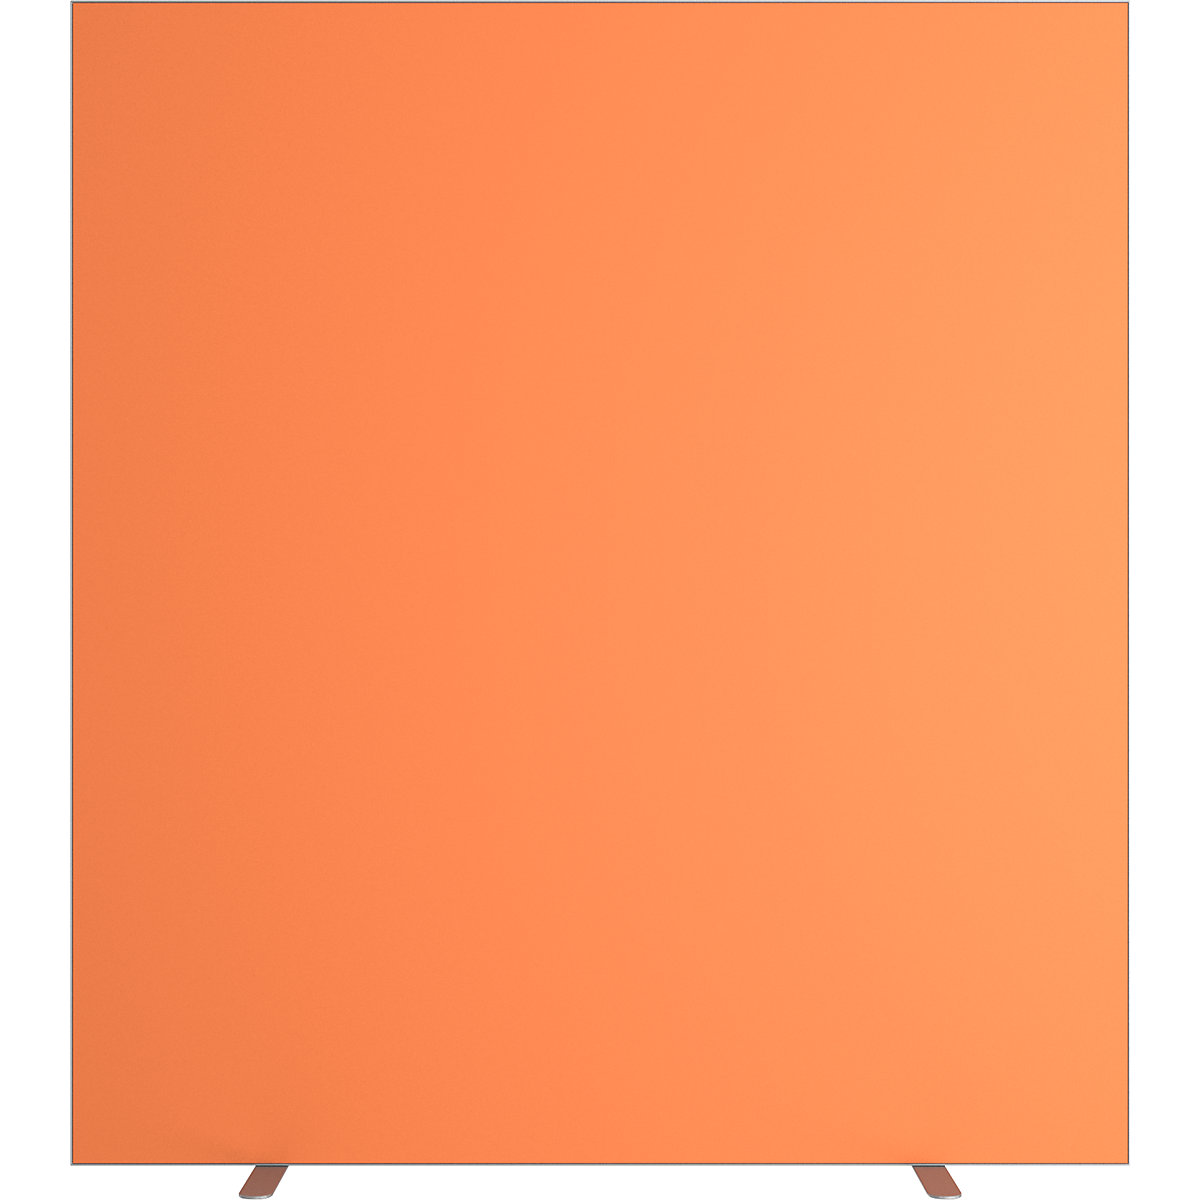 Predelna stena easyScreen, enobarvna izvedba, z zvočno izolacijo, oranžne barve, širina 1600 mm